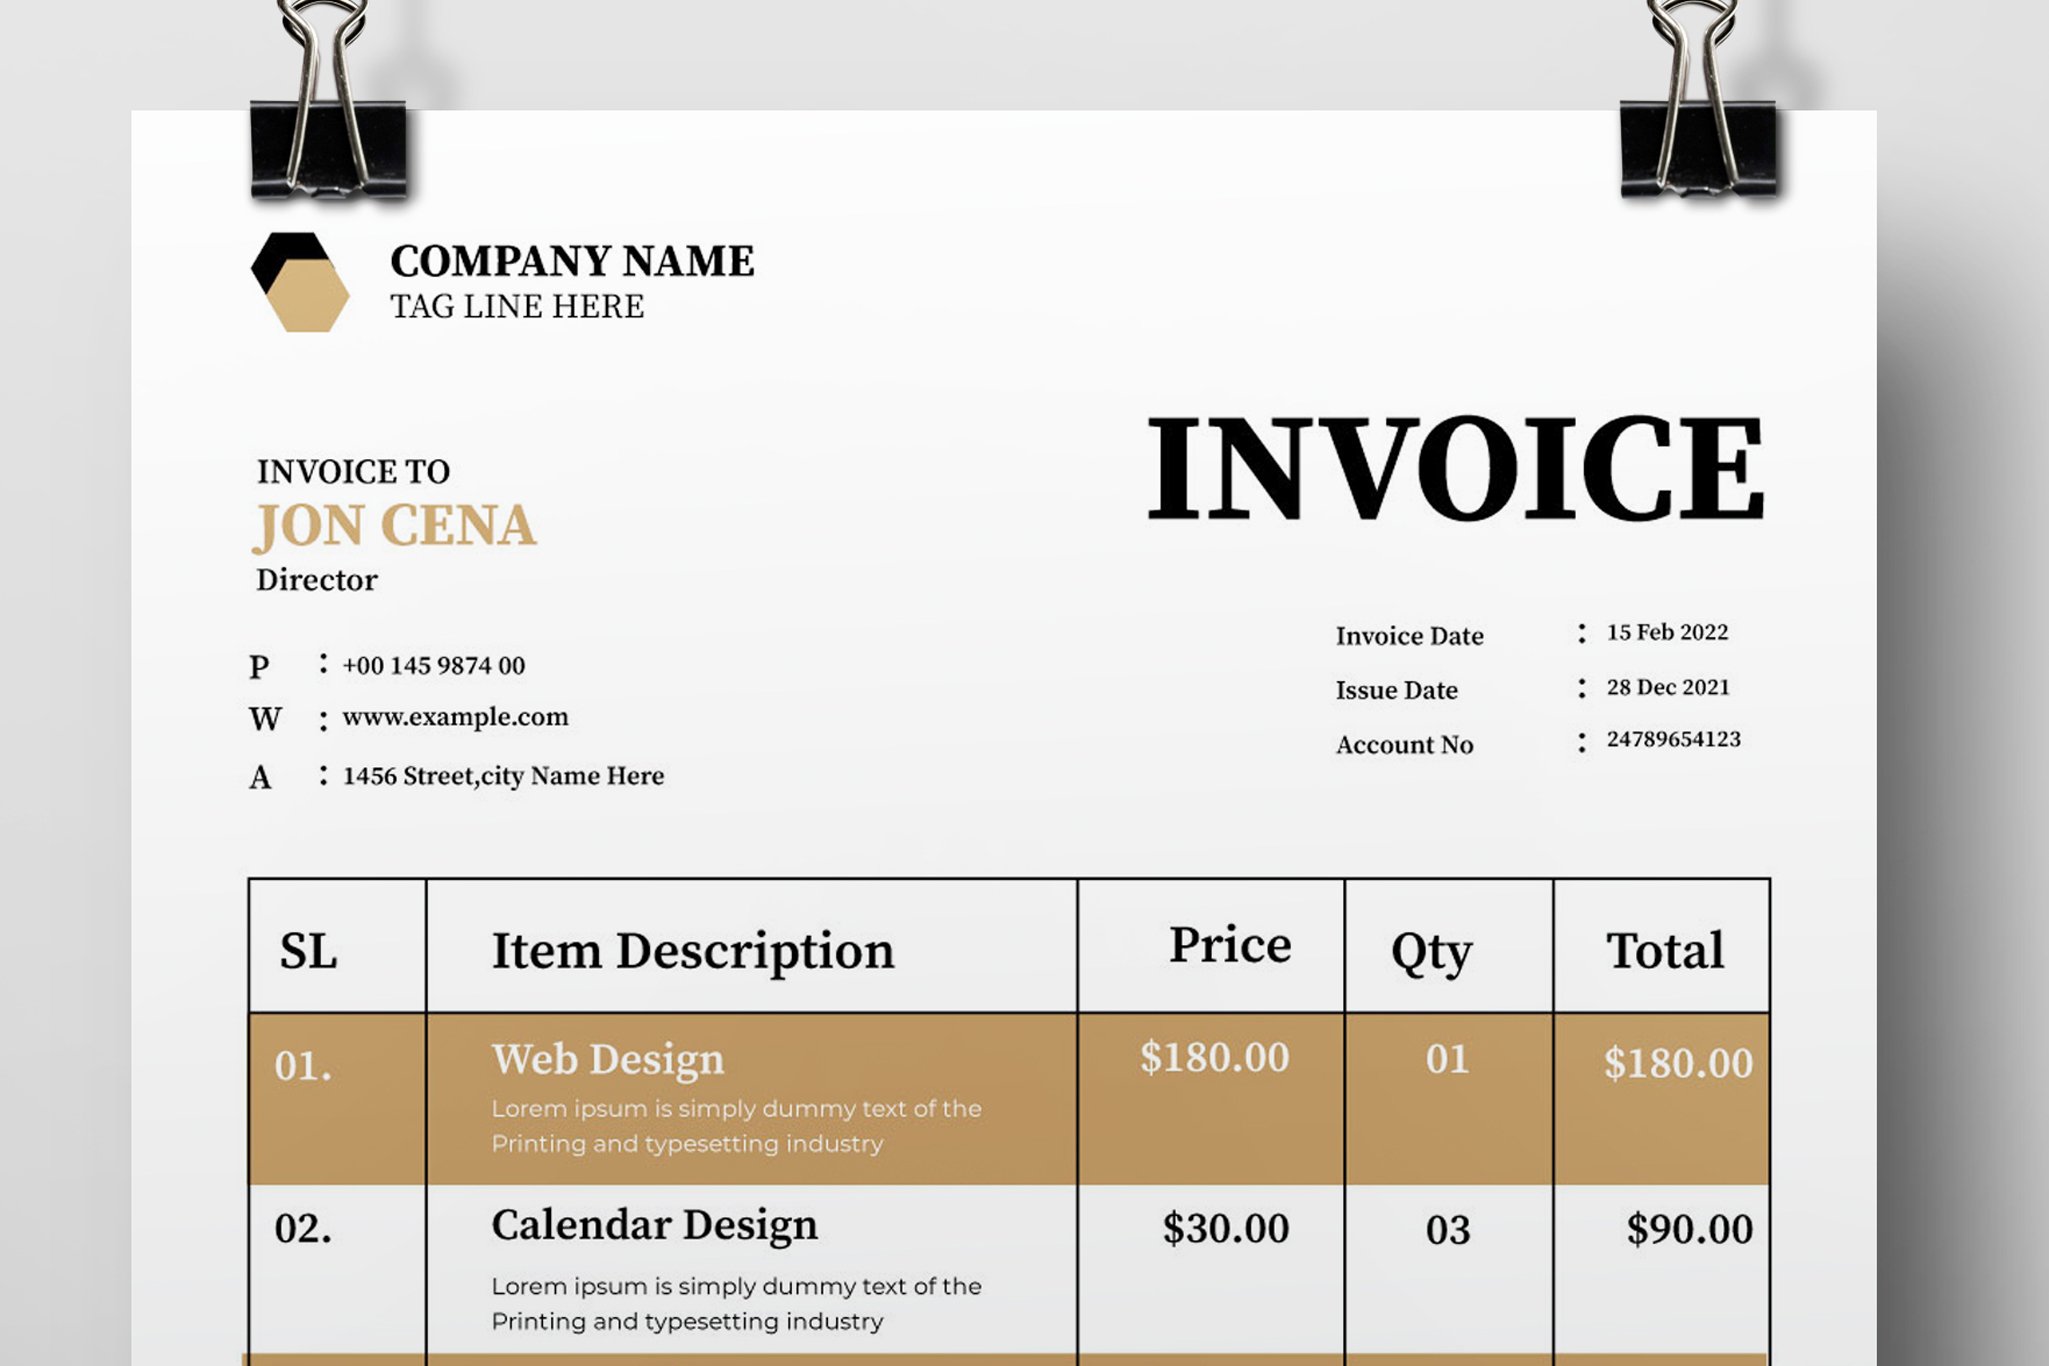 Invoice Design 2023 preview image.